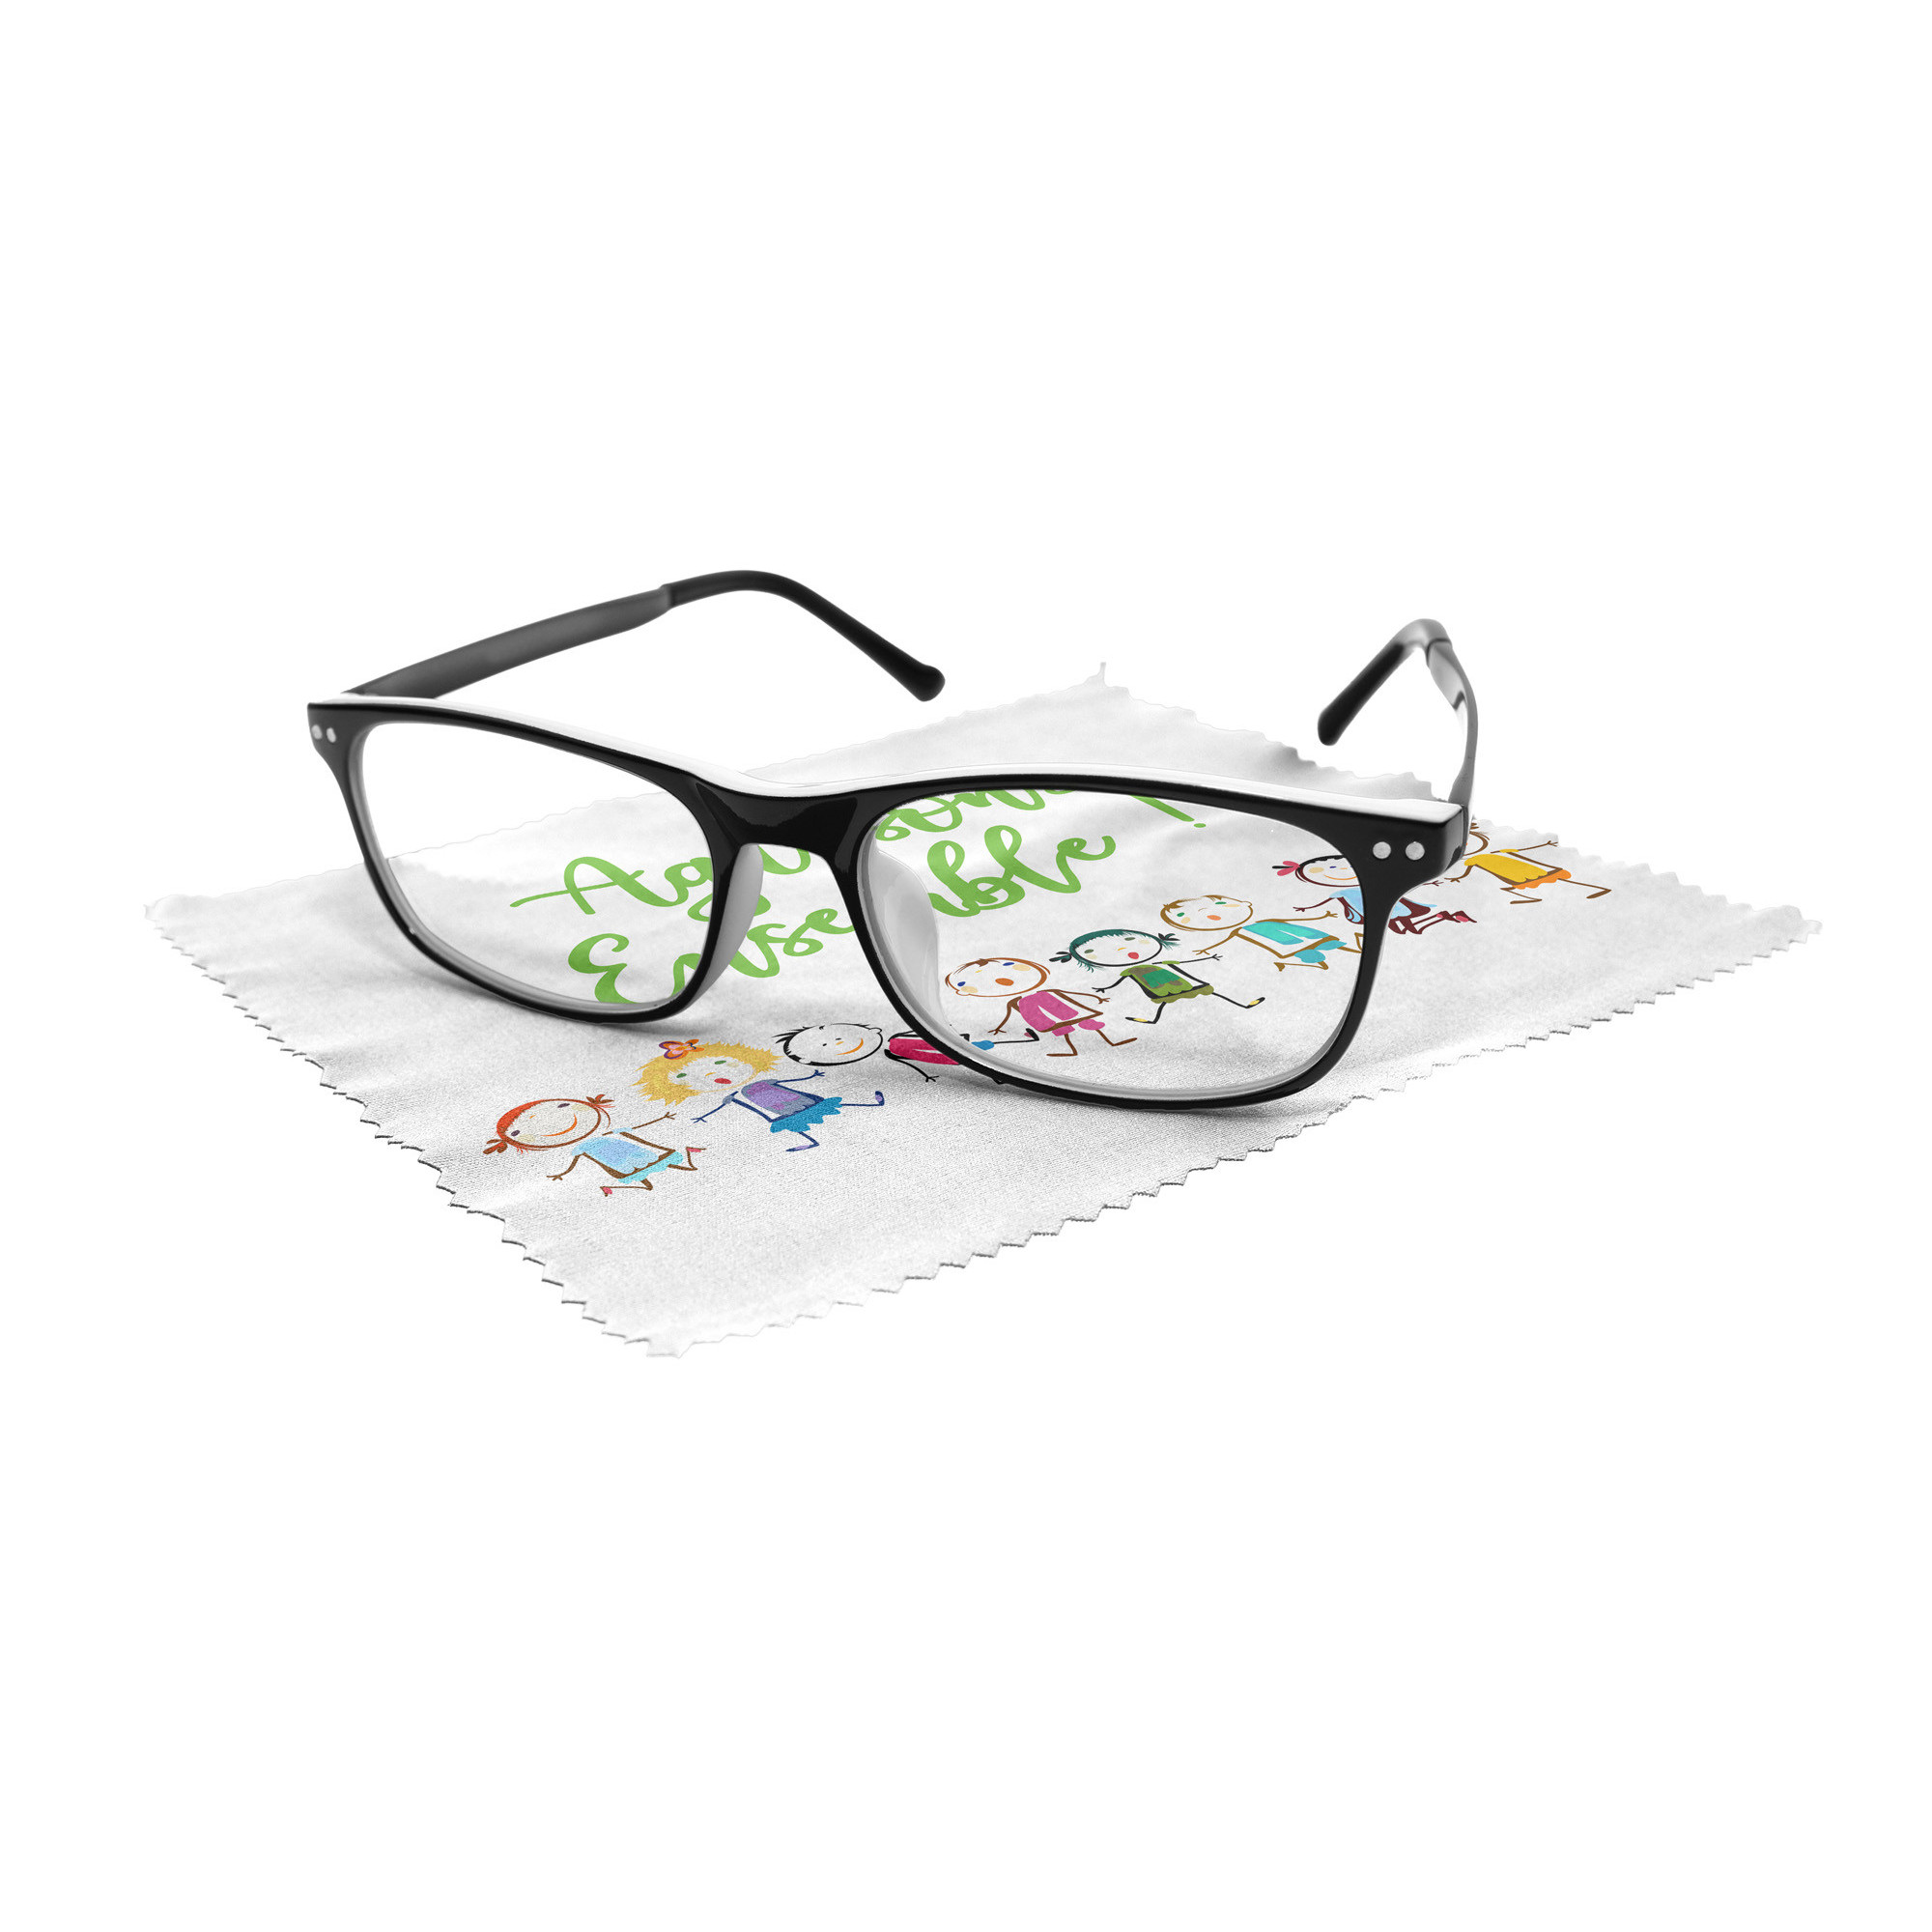 Gamuza limpia gafas personalizadas con tus fotos